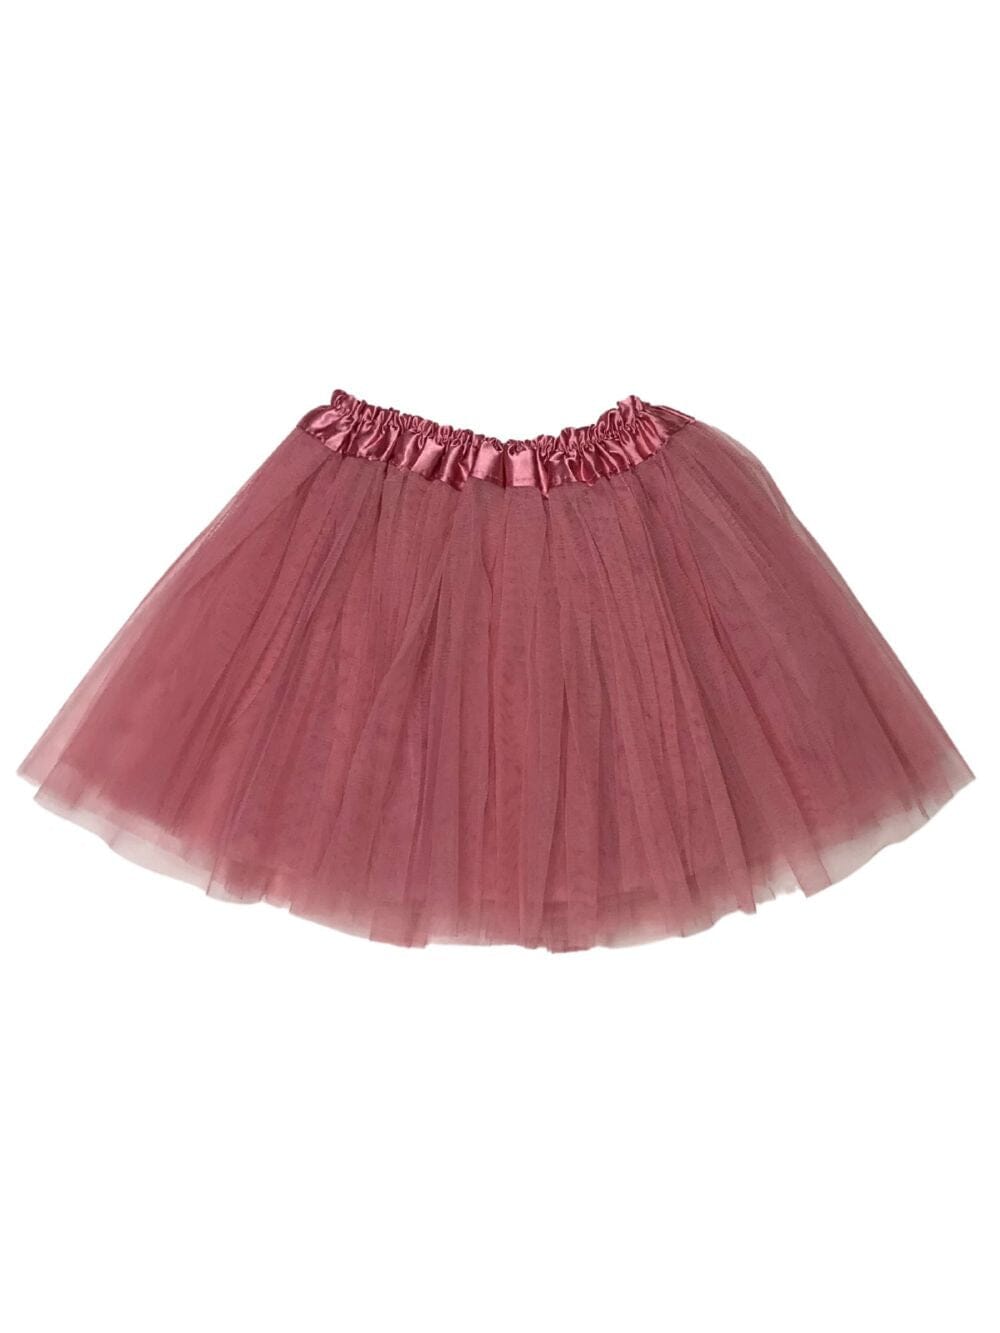 Dusty Rose Tutu Skirt - Kids Size 3-Layer Tulle Basic Ballet Dance Costume Tutus for Girls - Sydney So Sweet